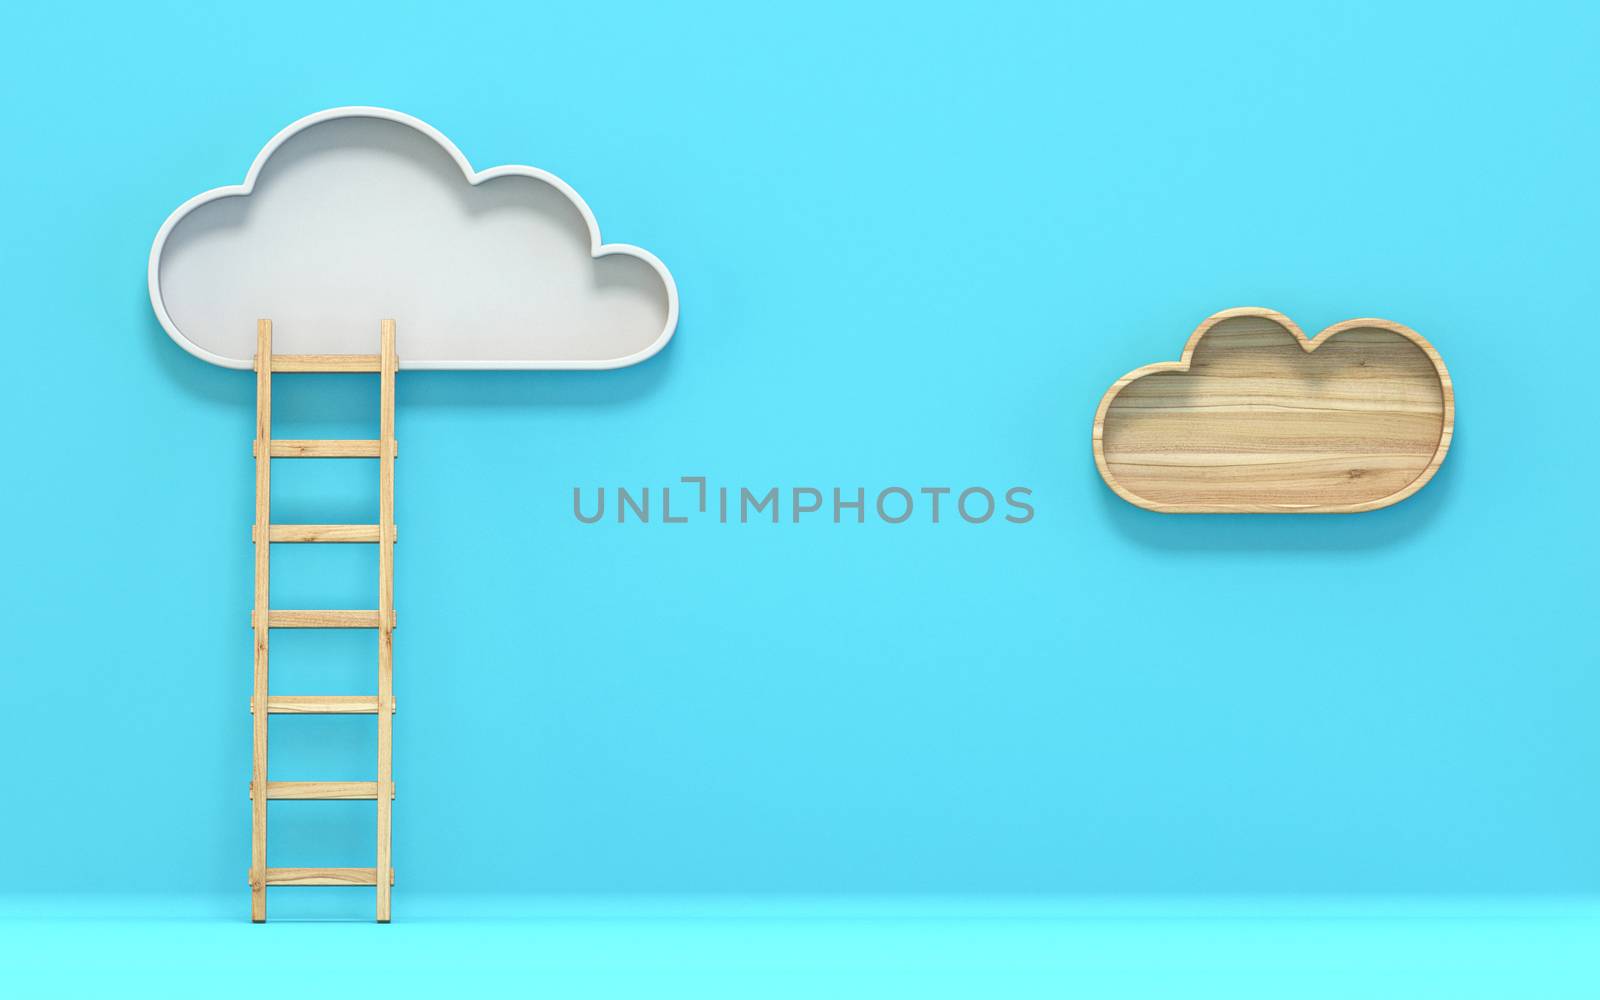 Cloud with ladder 3D render illustration on blue background